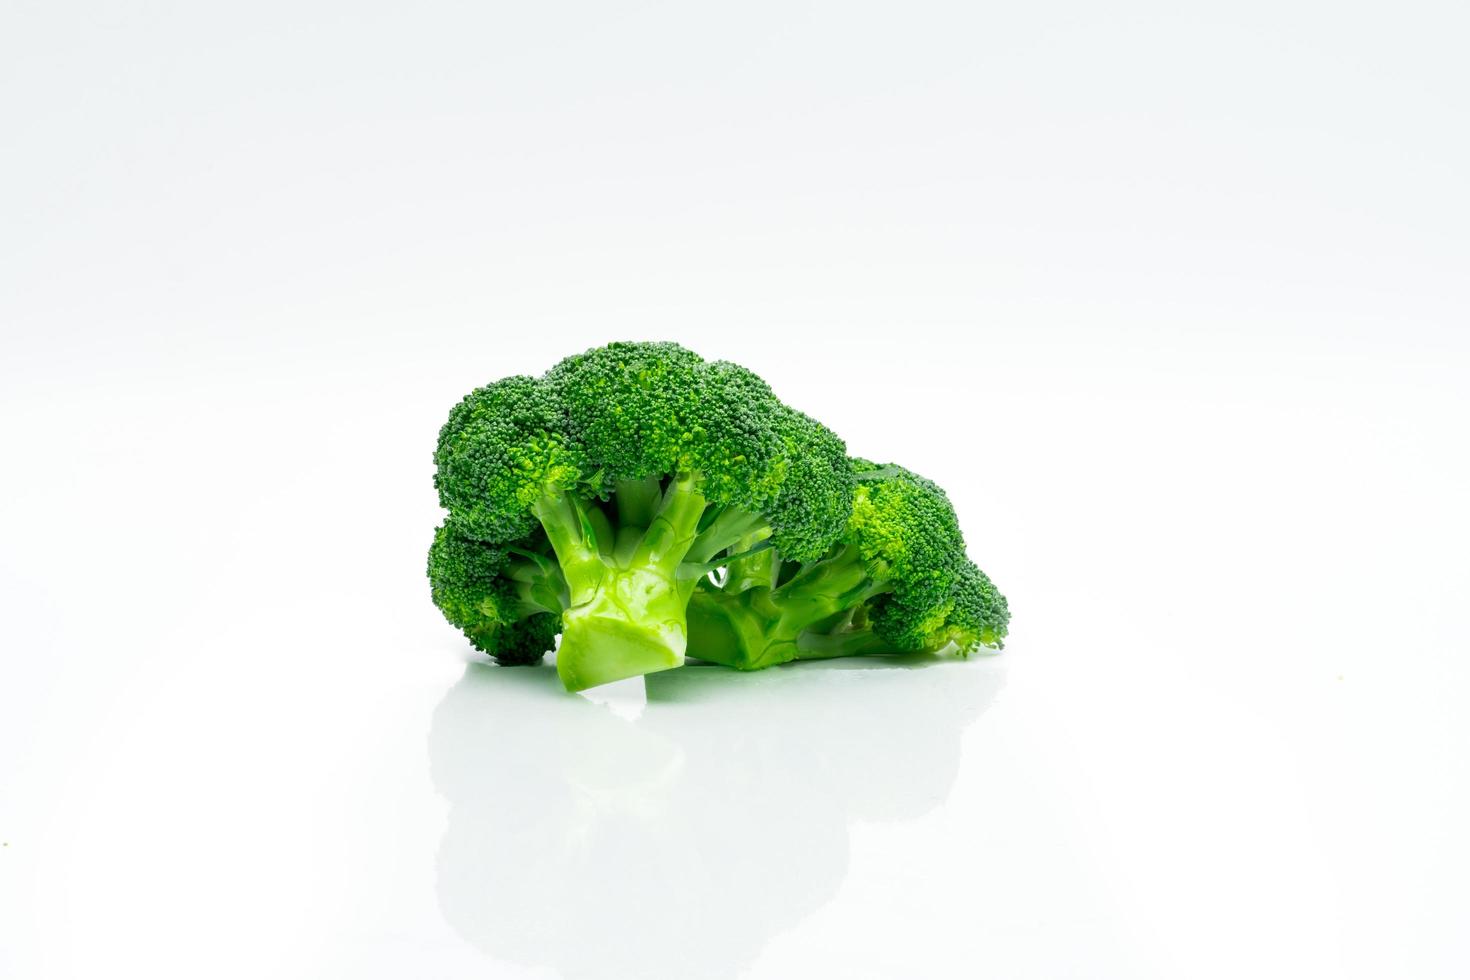 Grüner Brokkoli Brassica Oleracea. Gemüse natürliche Quelle für Betacarotin, Vitamin C, Vitamin K, Ballaststoffe, Folsäure. frischer Brokkoli Kohl isoliert auf weißem Hintergrund. foto